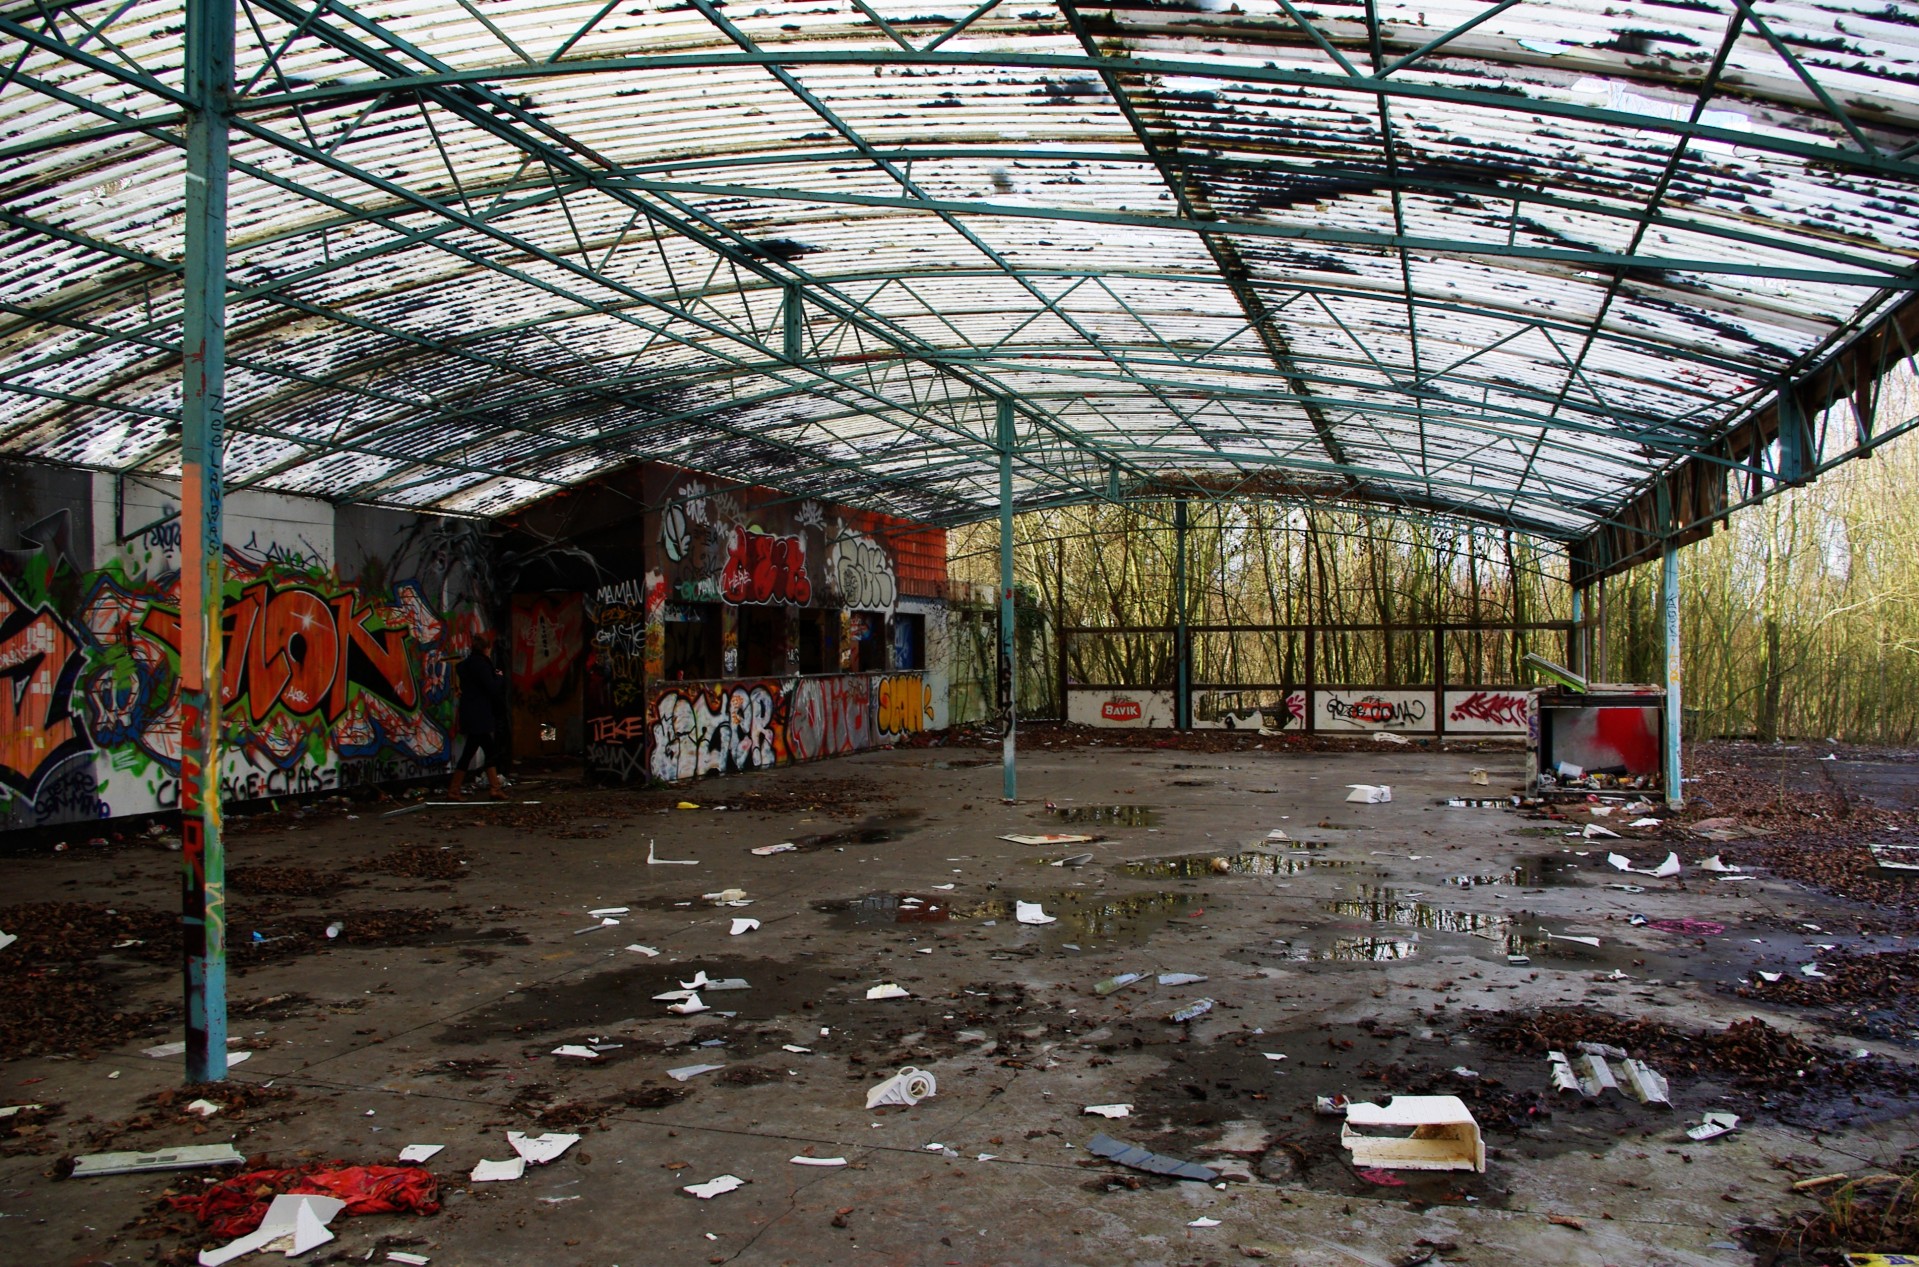 Abandoned hangar in amusement park